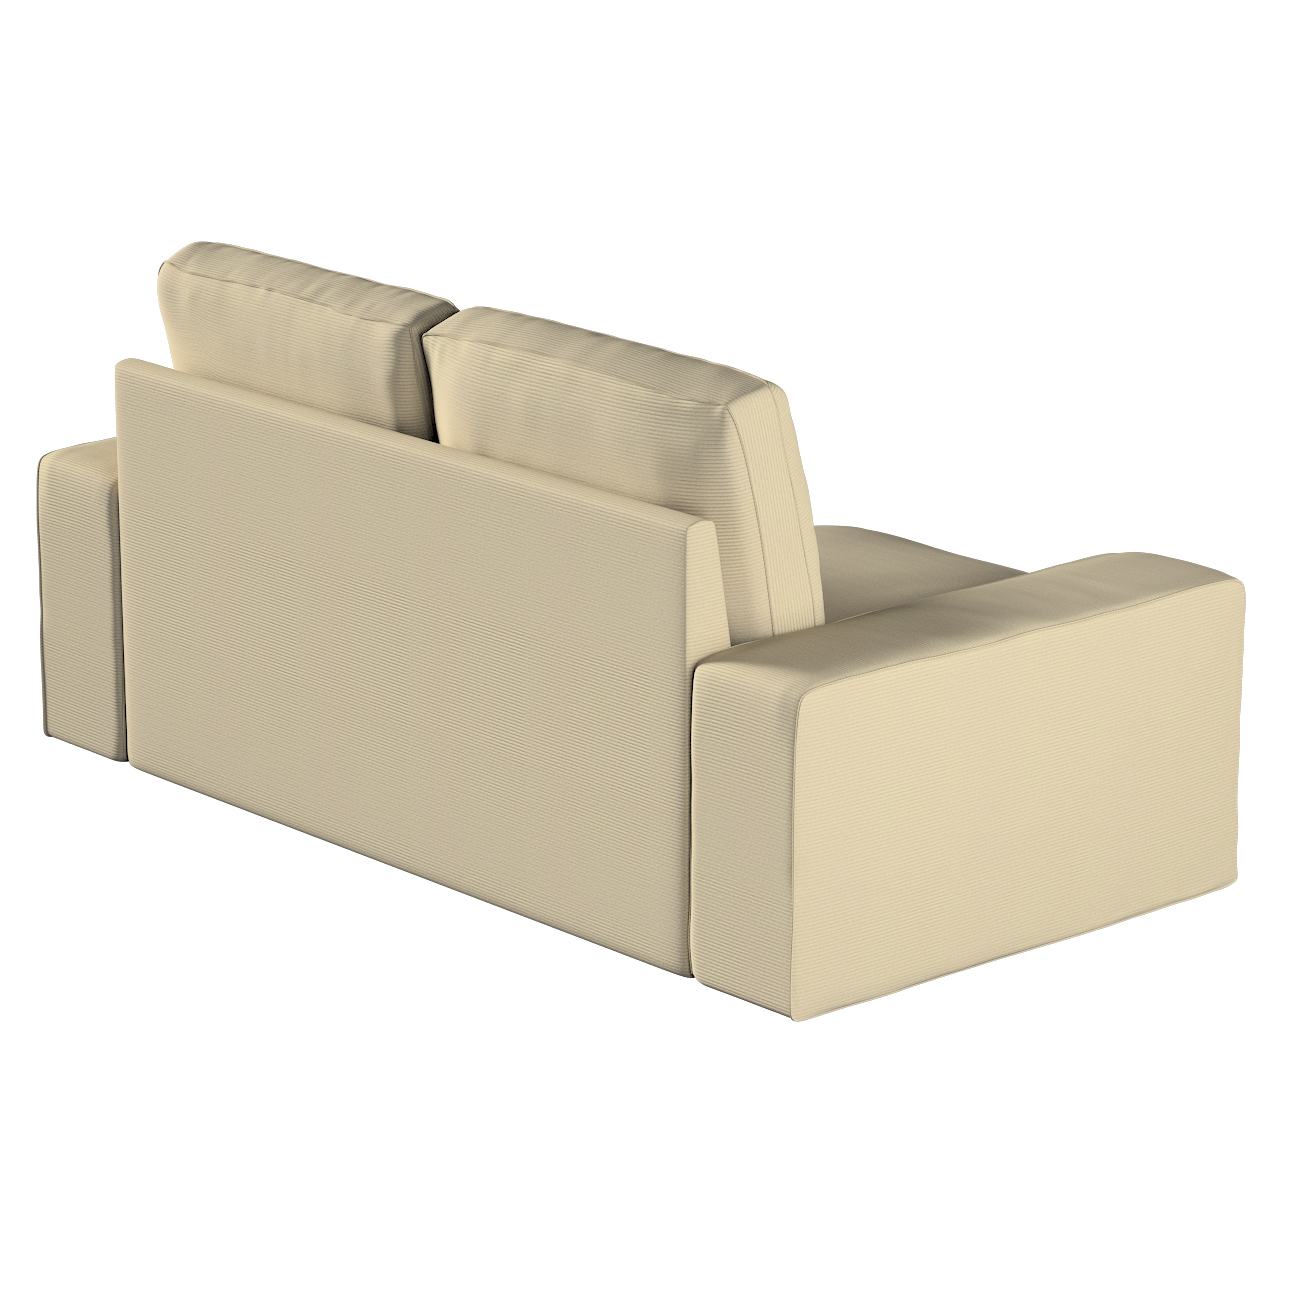 Bezug für Kivik 2-Sitzer Sofa, beige, Bezug für Sofa Kivik 2-Sitzer, Manche günstig online kaufen